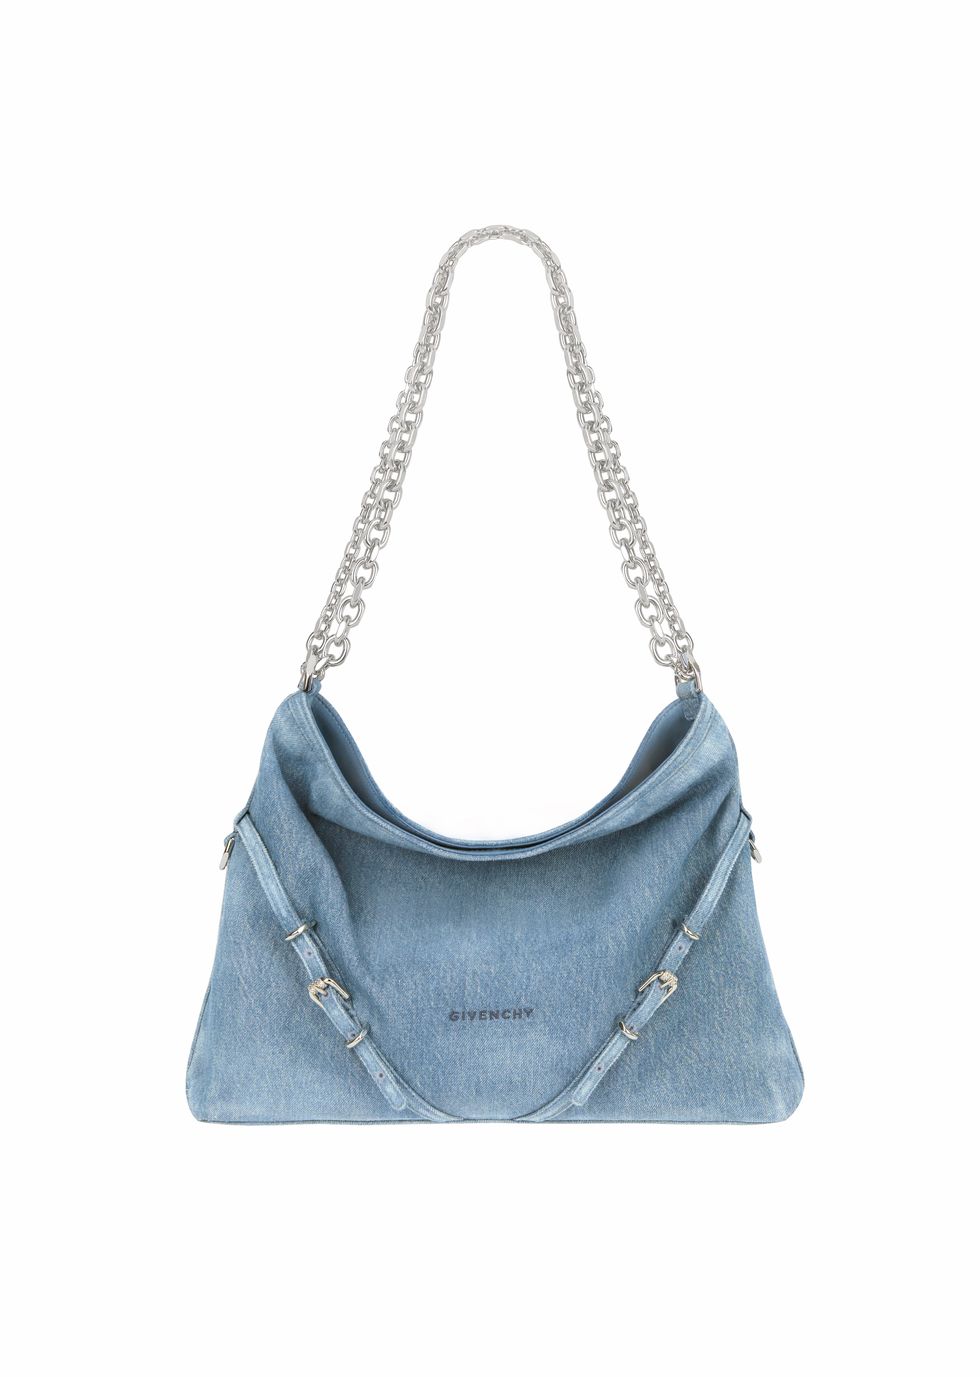 a blue handbag with a strap